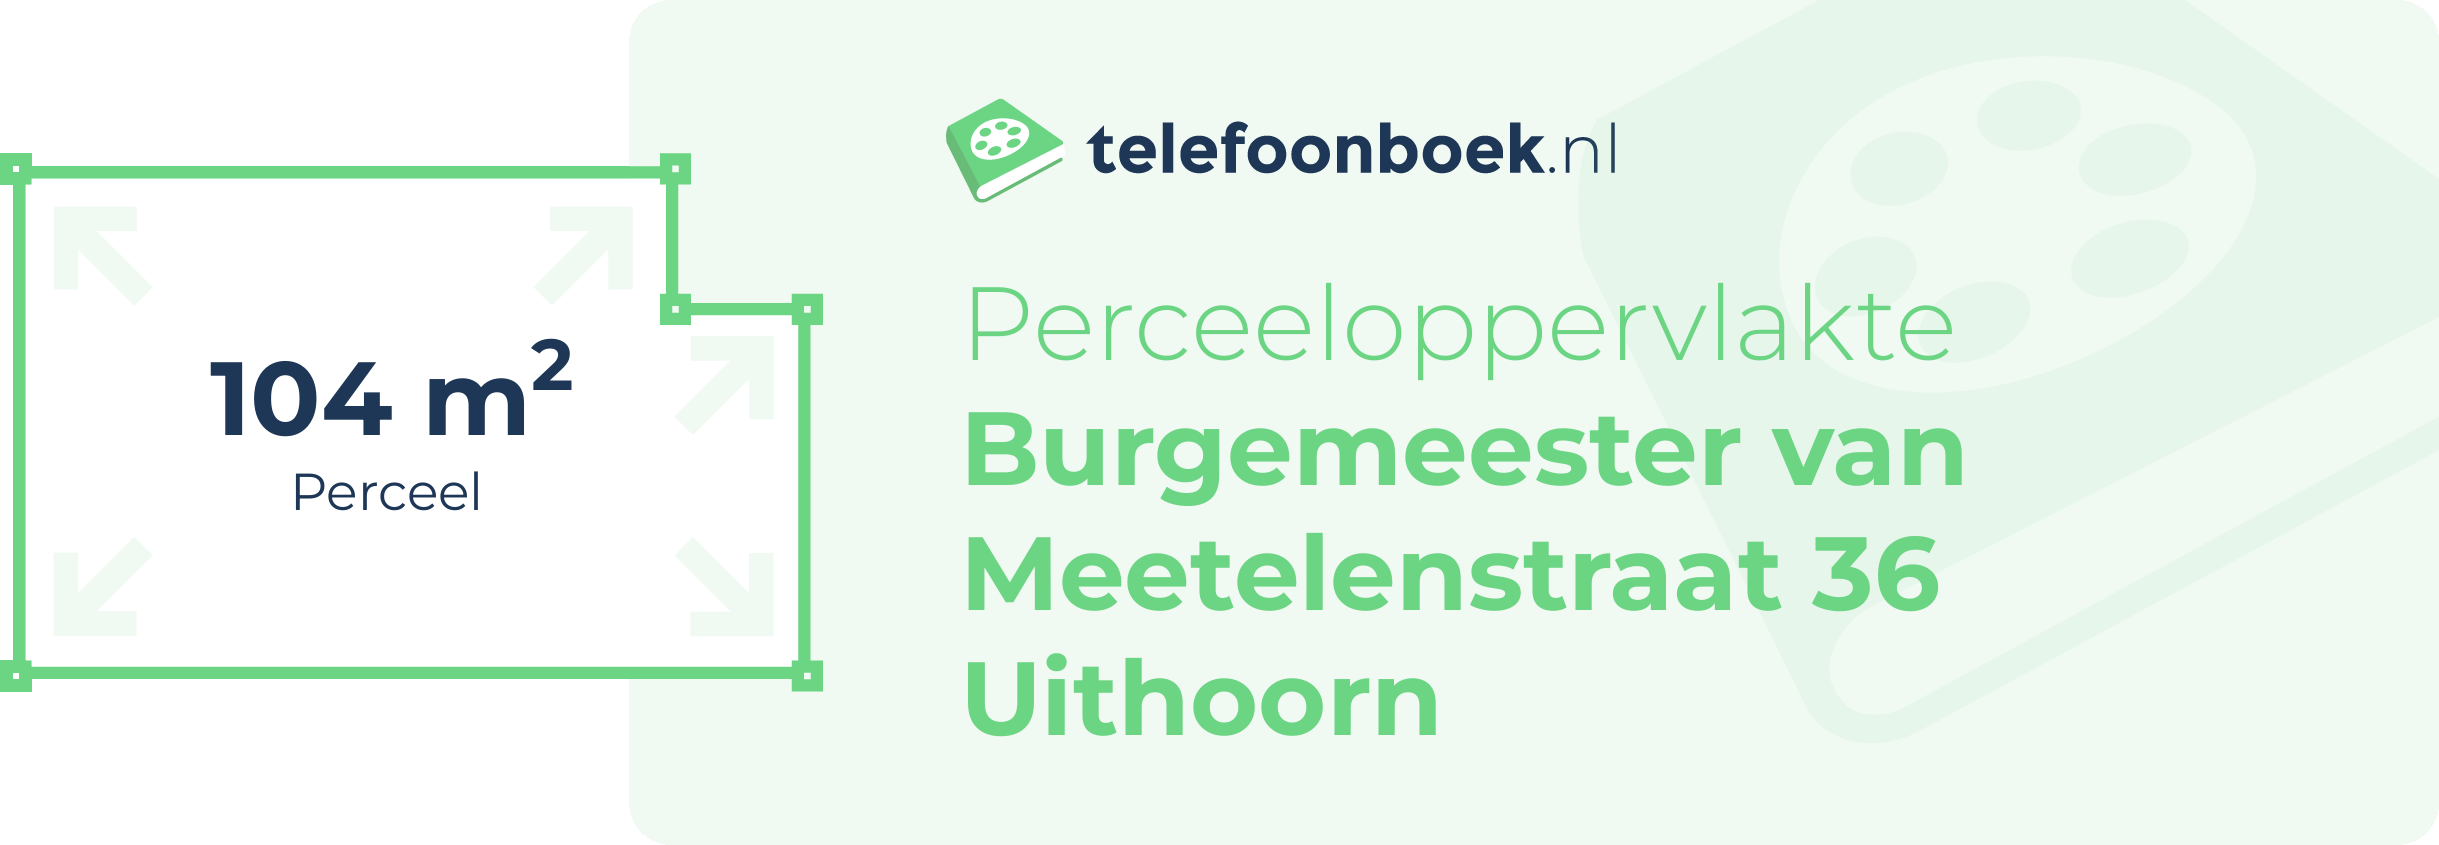 Perceeloppervlakte Burgemeester Van Meetelenstraat 36 Uithoorn